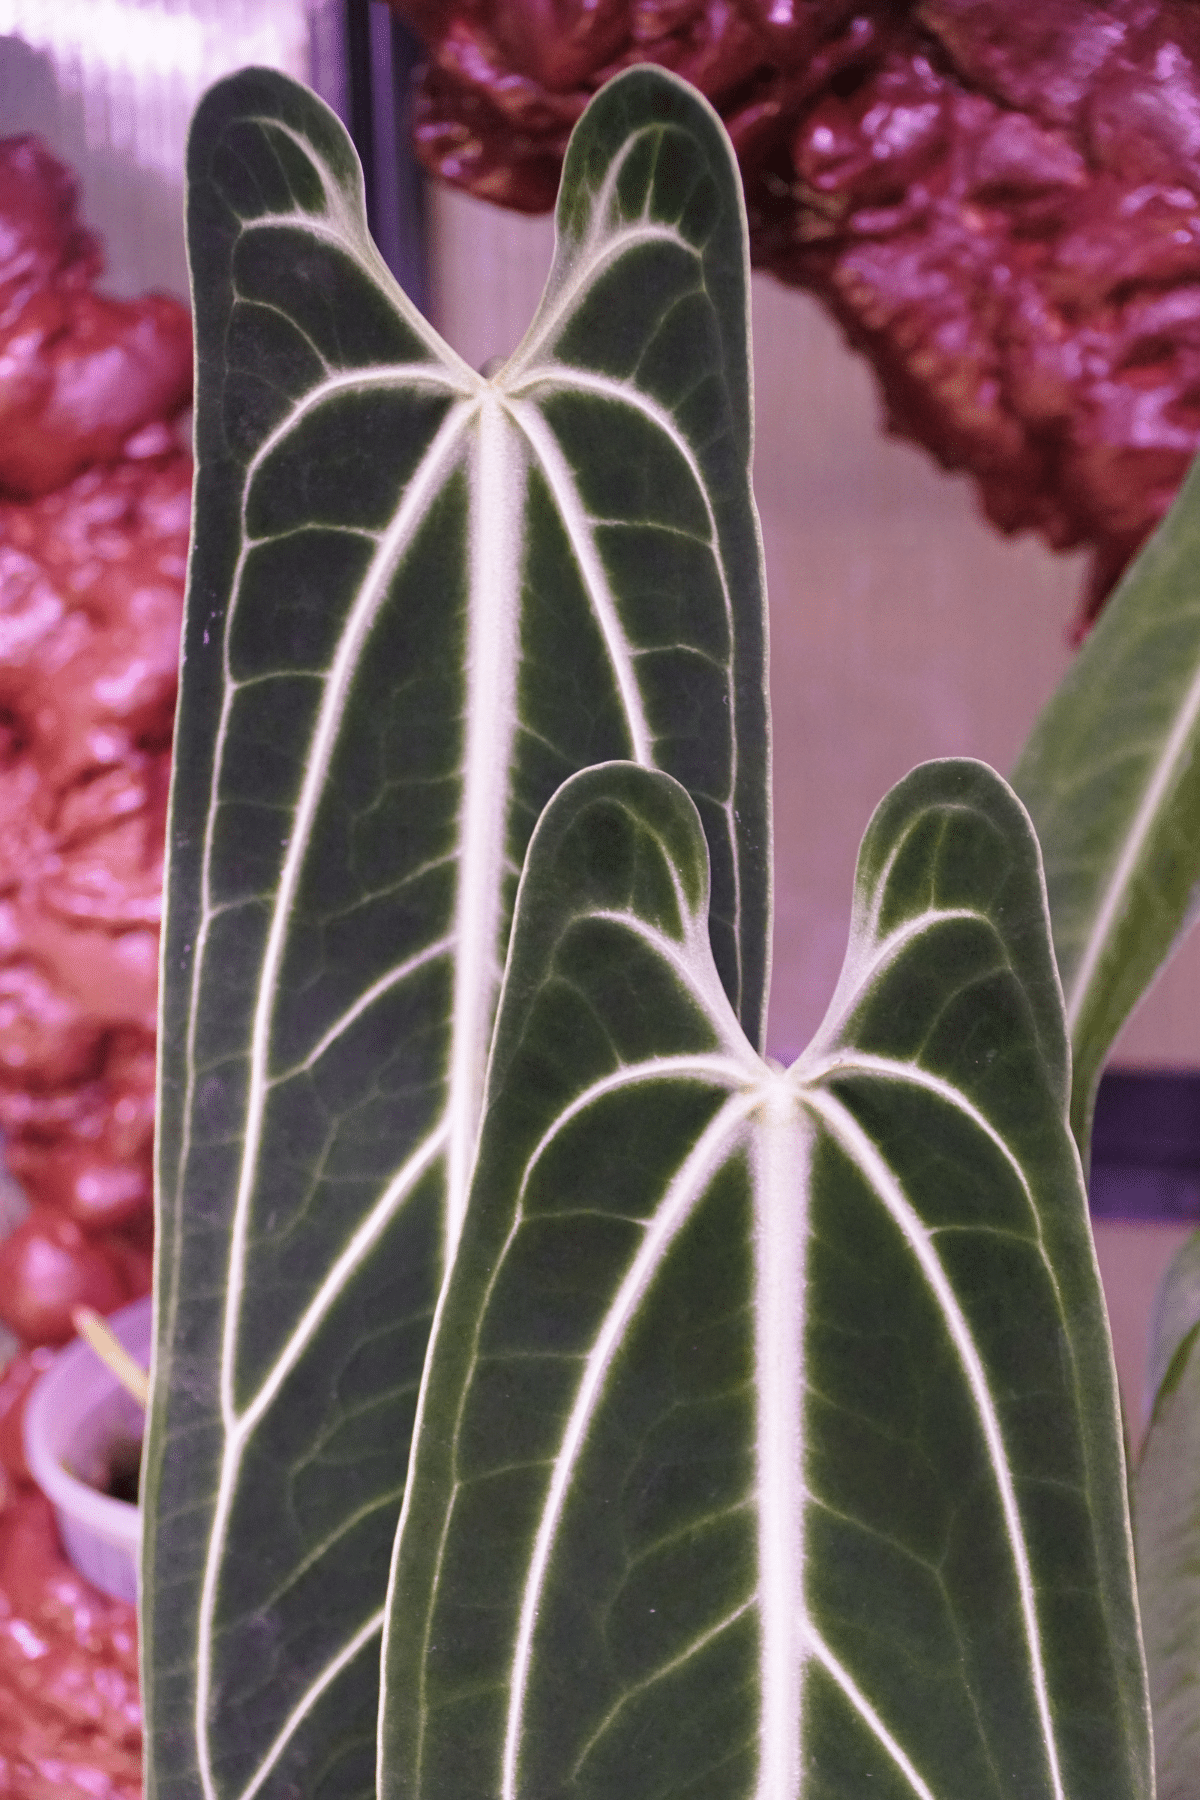 Close up look of Anthurium Warocqueanum.